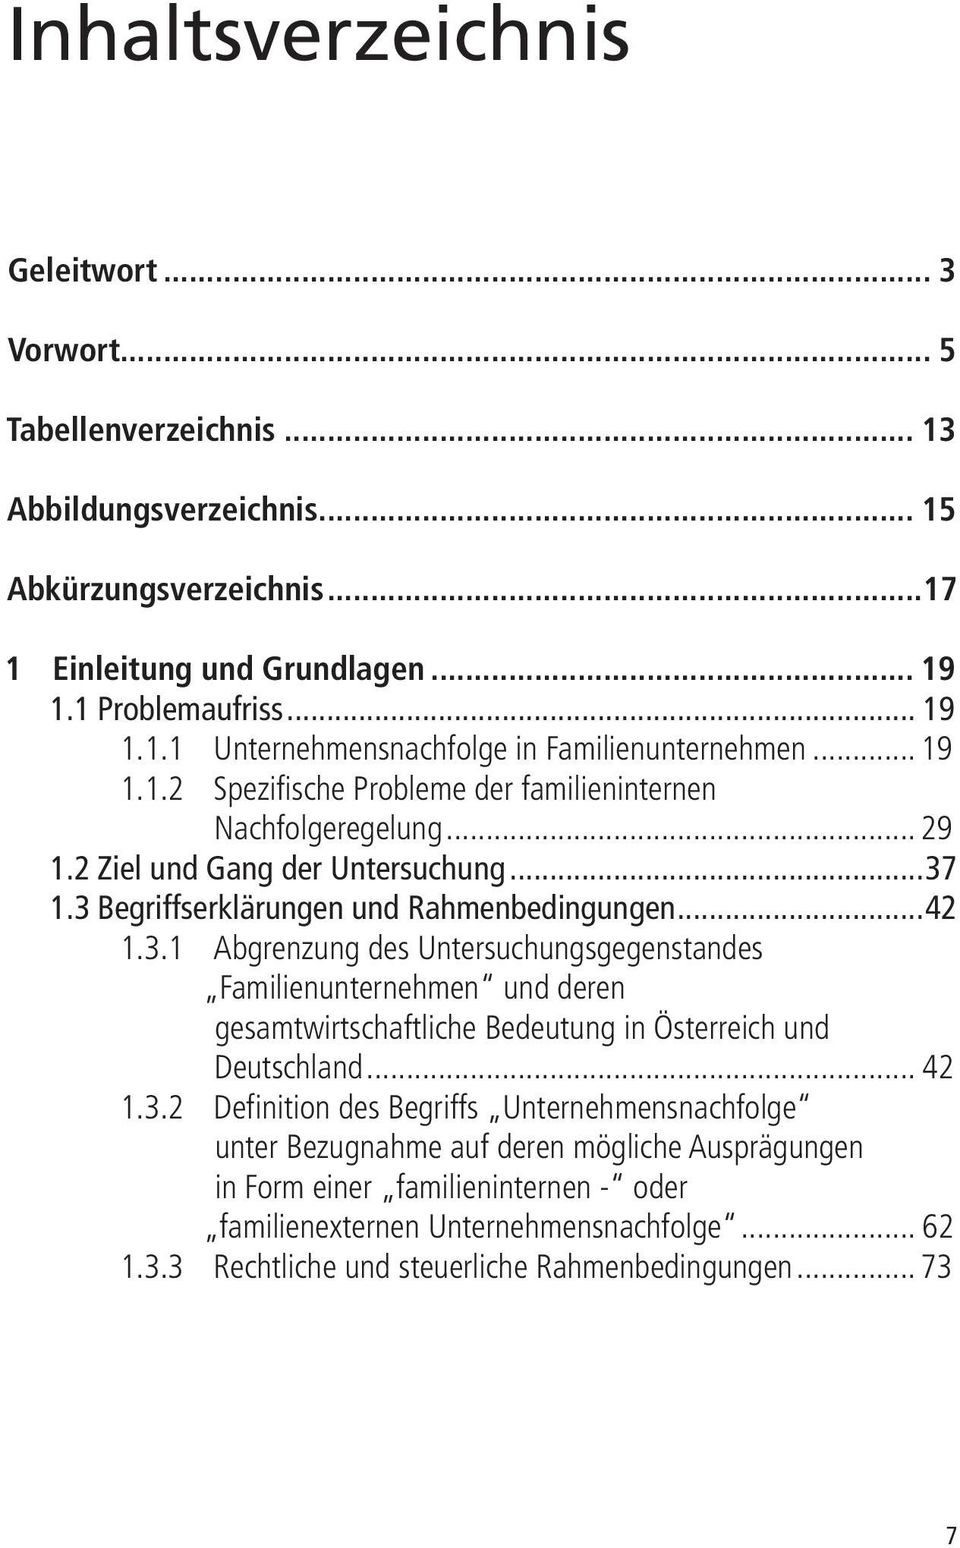 1.3 Begriffserklärungen und Rahmenbedingungen...42 1.3.1 Abgrenzung des Untersuchungsgegenstandes Familienunternehmen und deren gesamtwirtschaftliche Bedeutung in Österreich und Deutschland... 42 1.